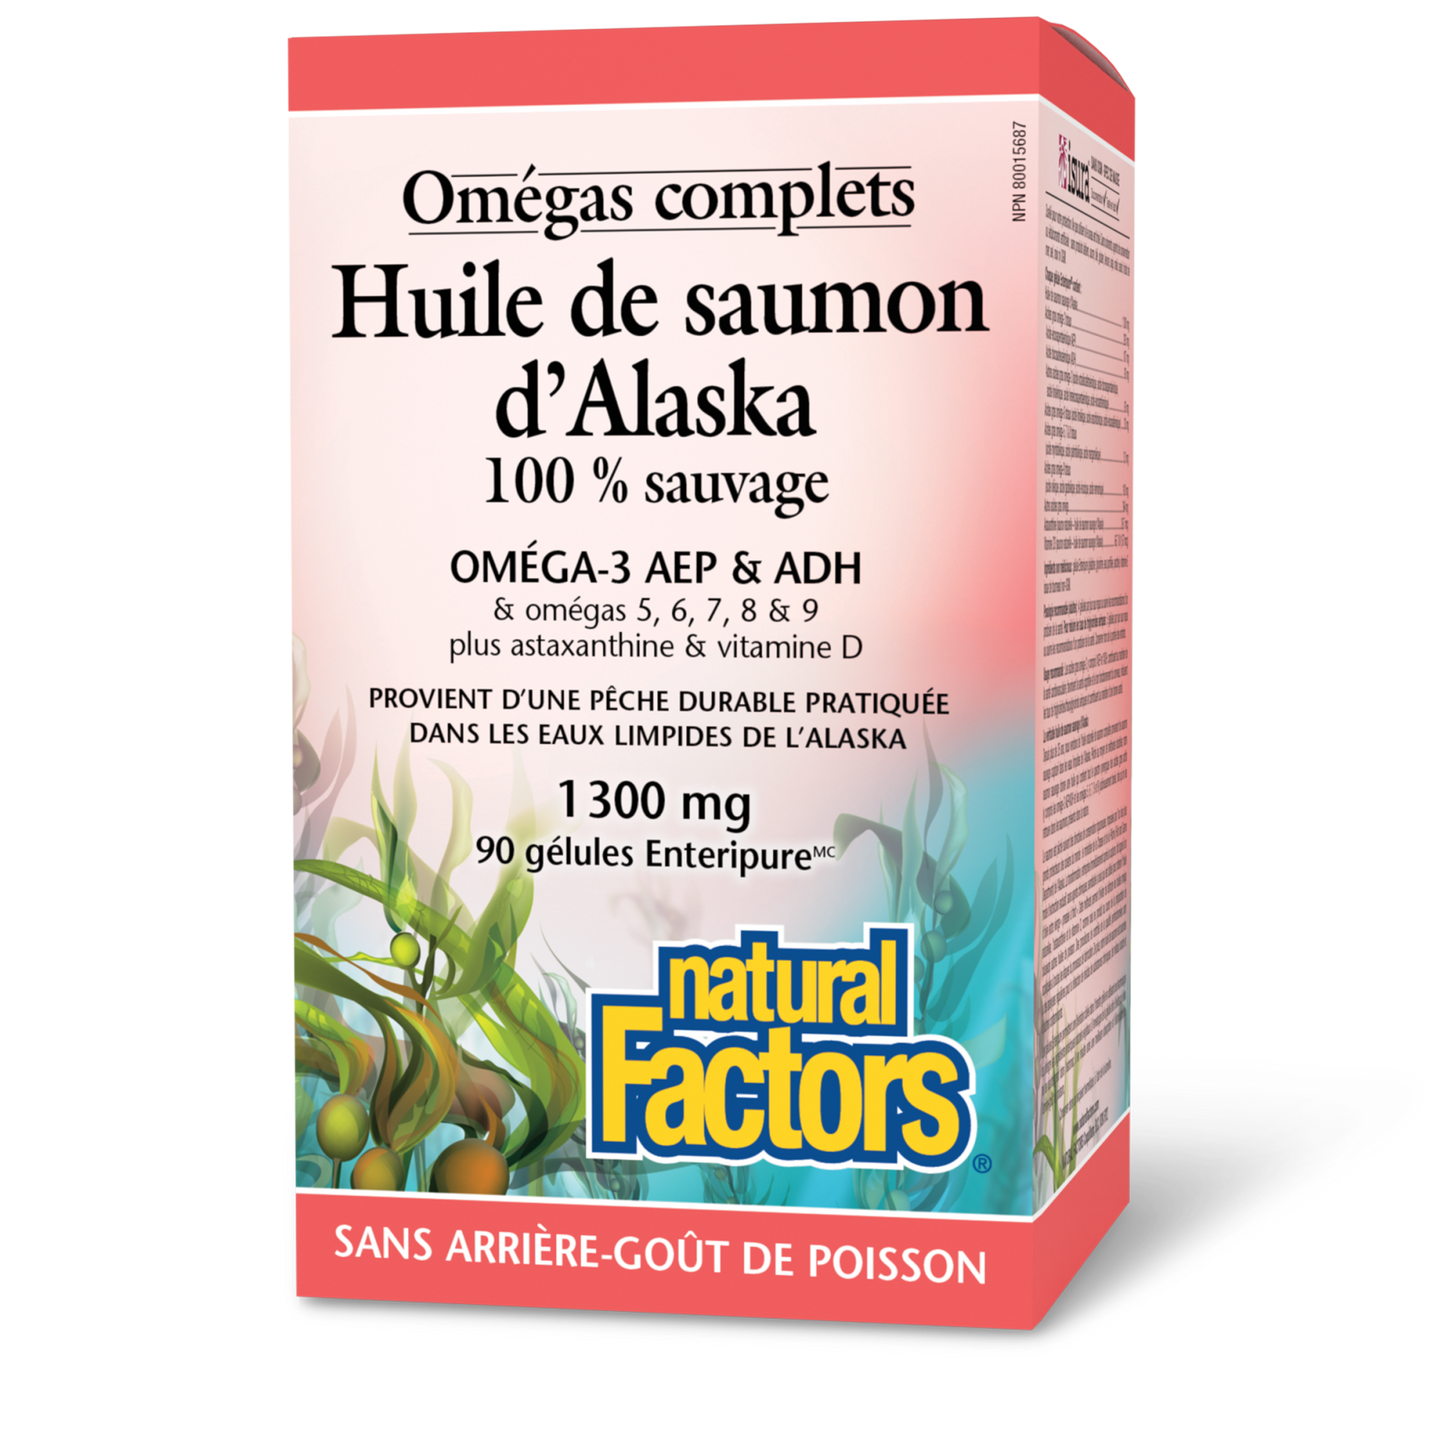 Huile de saumon d’Alaska 100 % sauvage 1 300 mg, Omégas complets, Natural Factors|v|image|2265